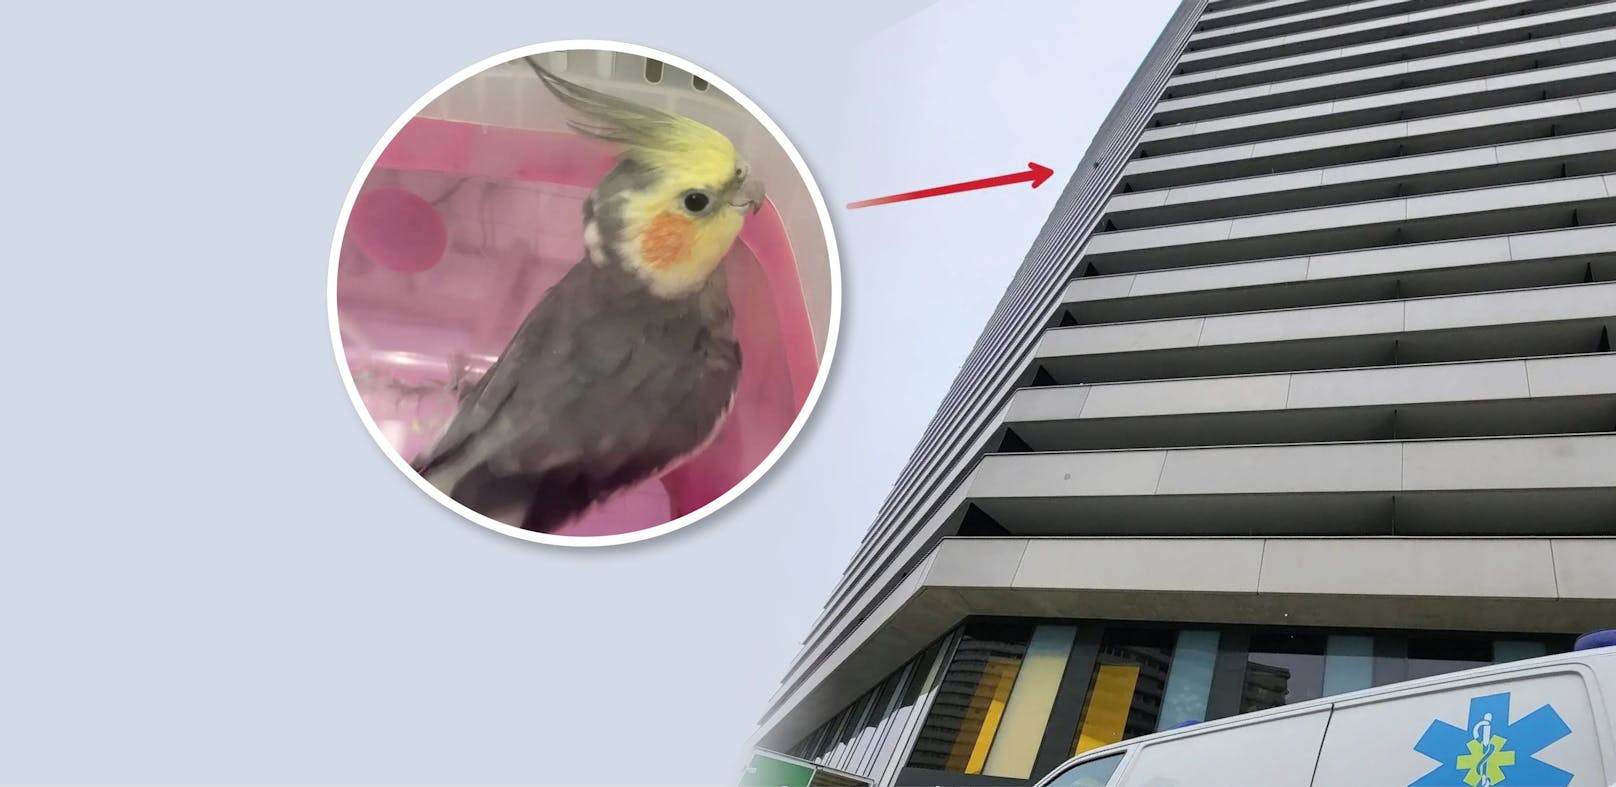 Der Nymphensittich büxte aus dem Käfig aus. Der Icara-Tierrettung gelang es, ihn aus dem 26. Stock des Bruckner Towers zu retten.